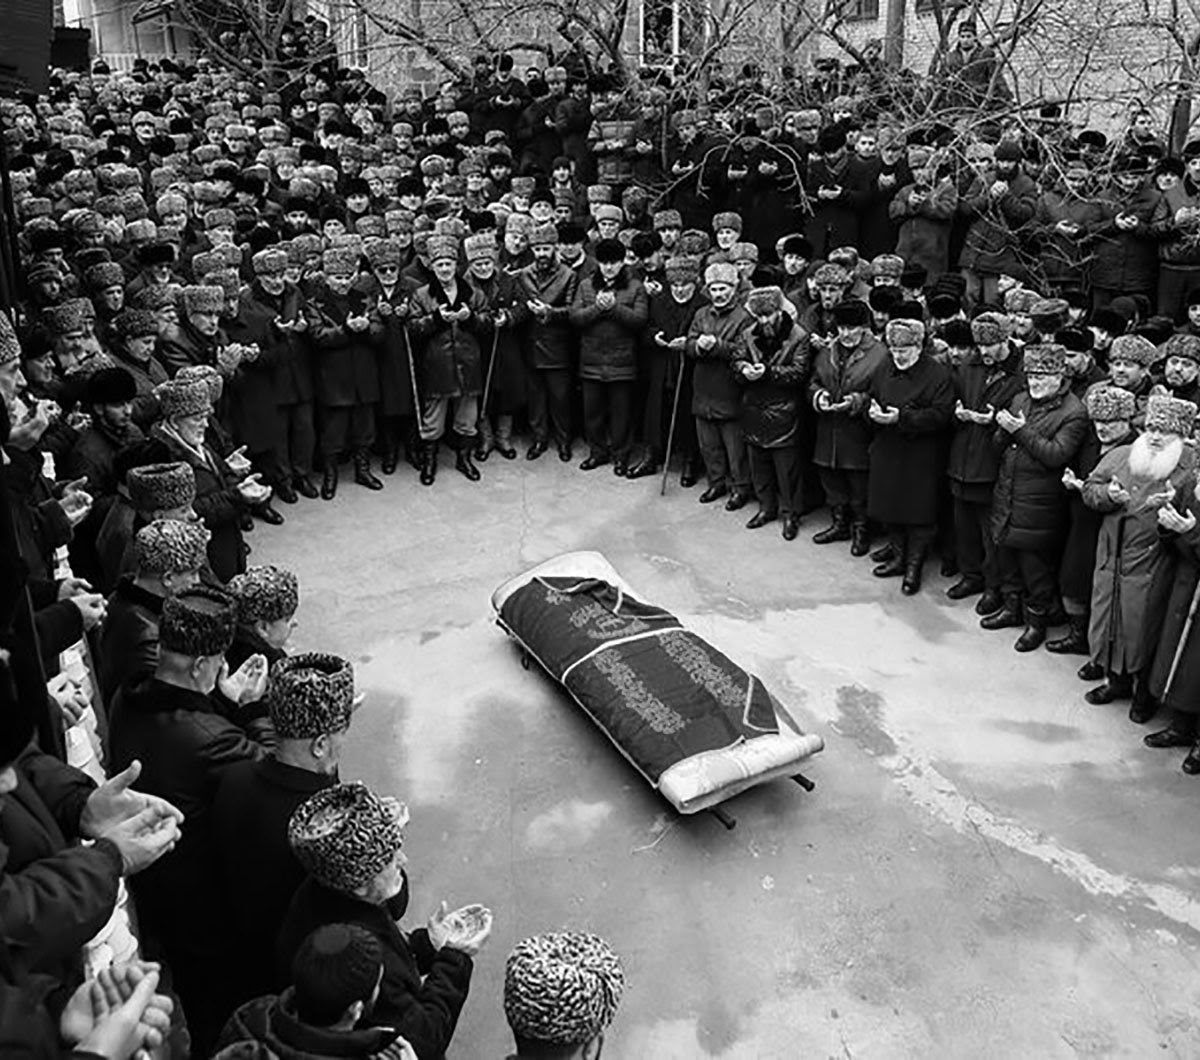 Традиции похорон - что можно и чего нельзя делать на похоронах?